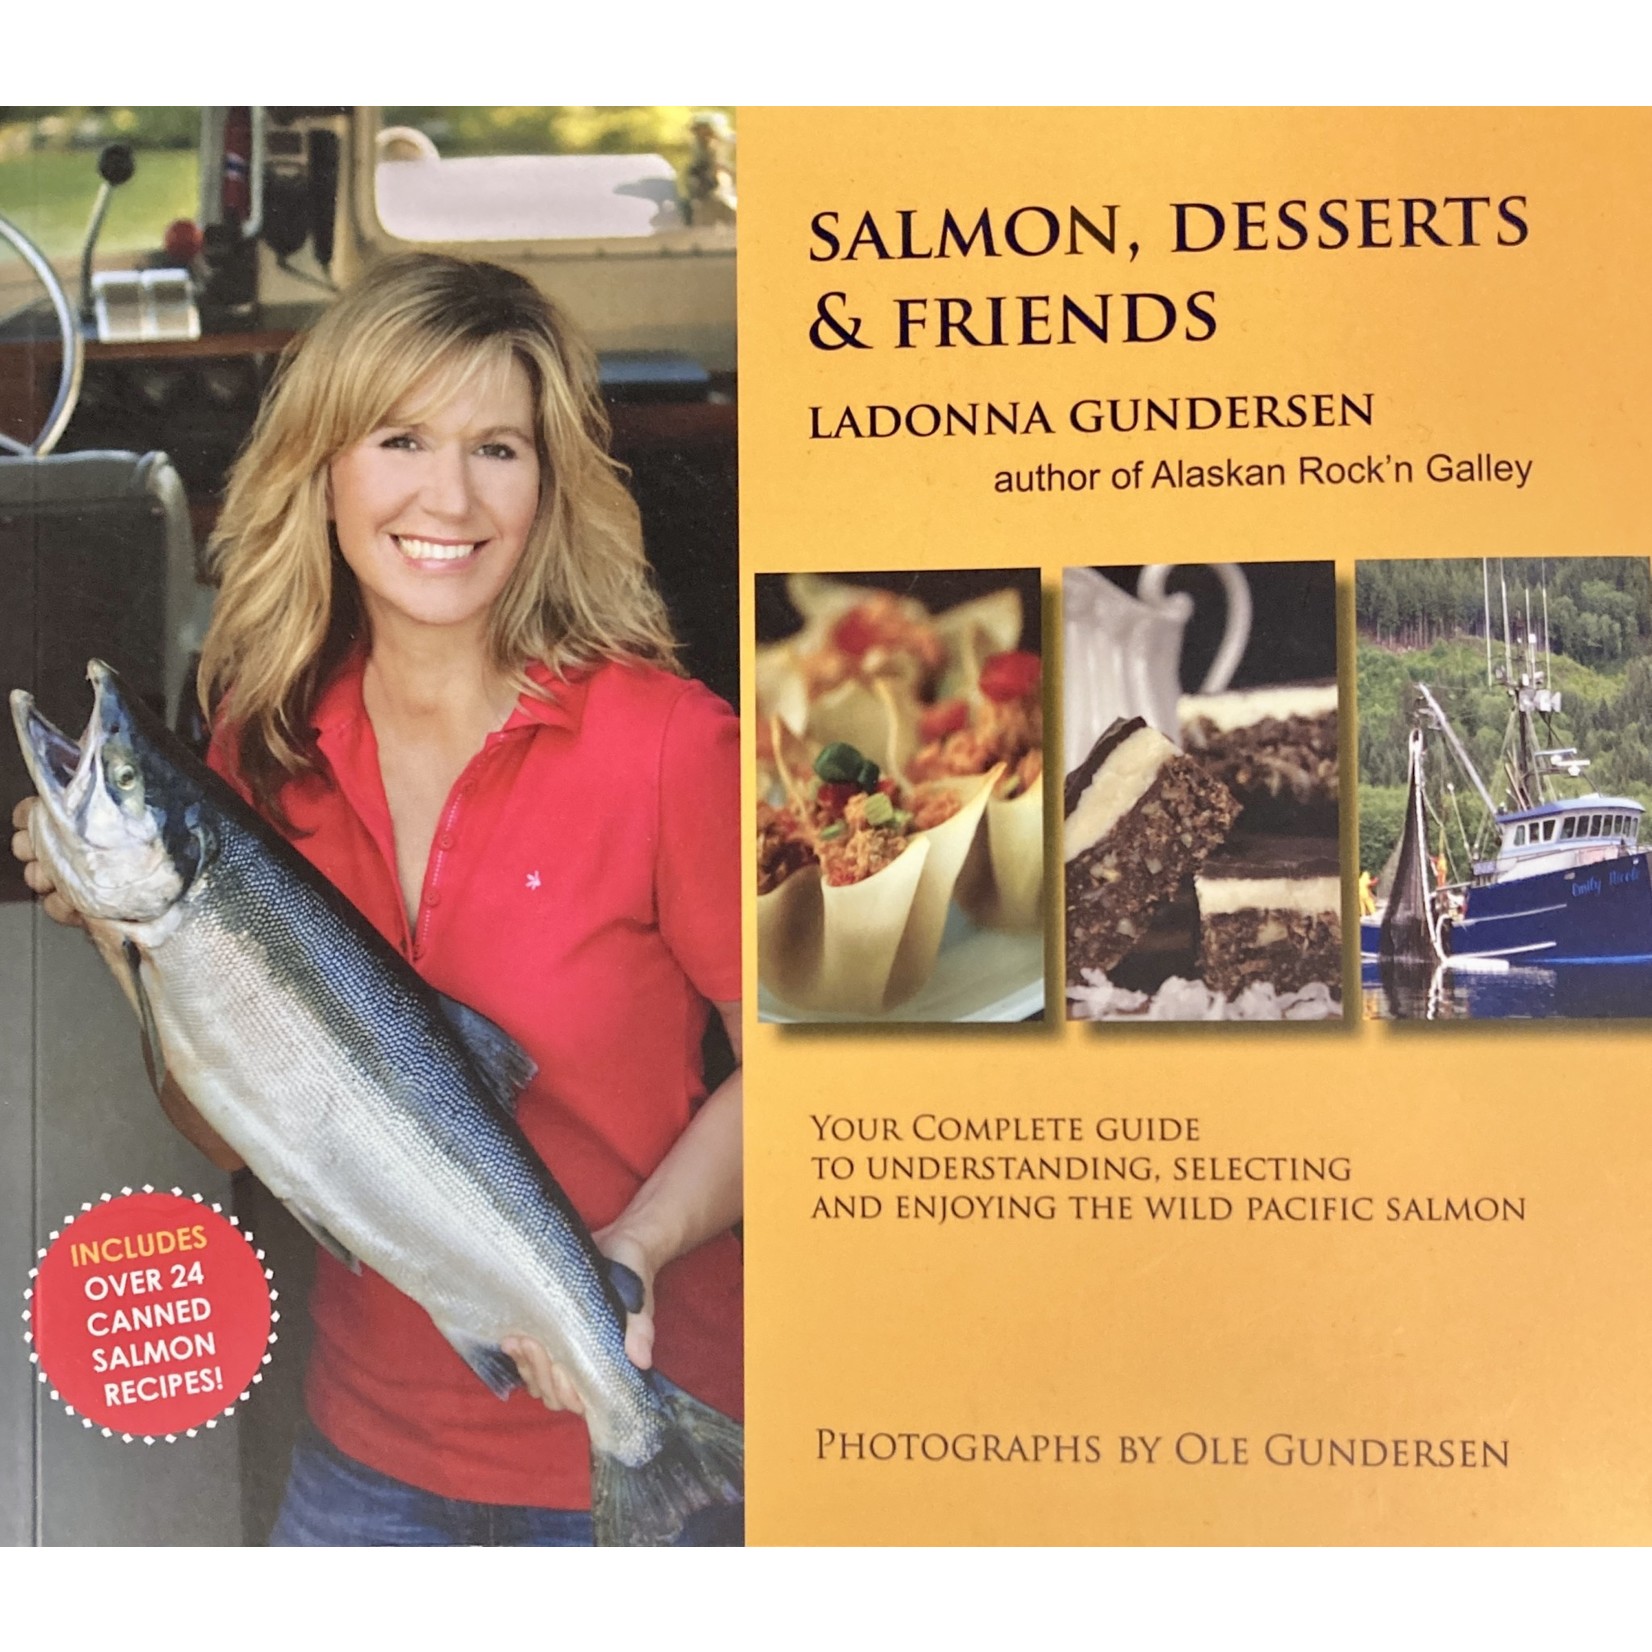 LaDonna Gundersen Salmon, Desserts & Friends Cookbook | LaDonna Gundersen